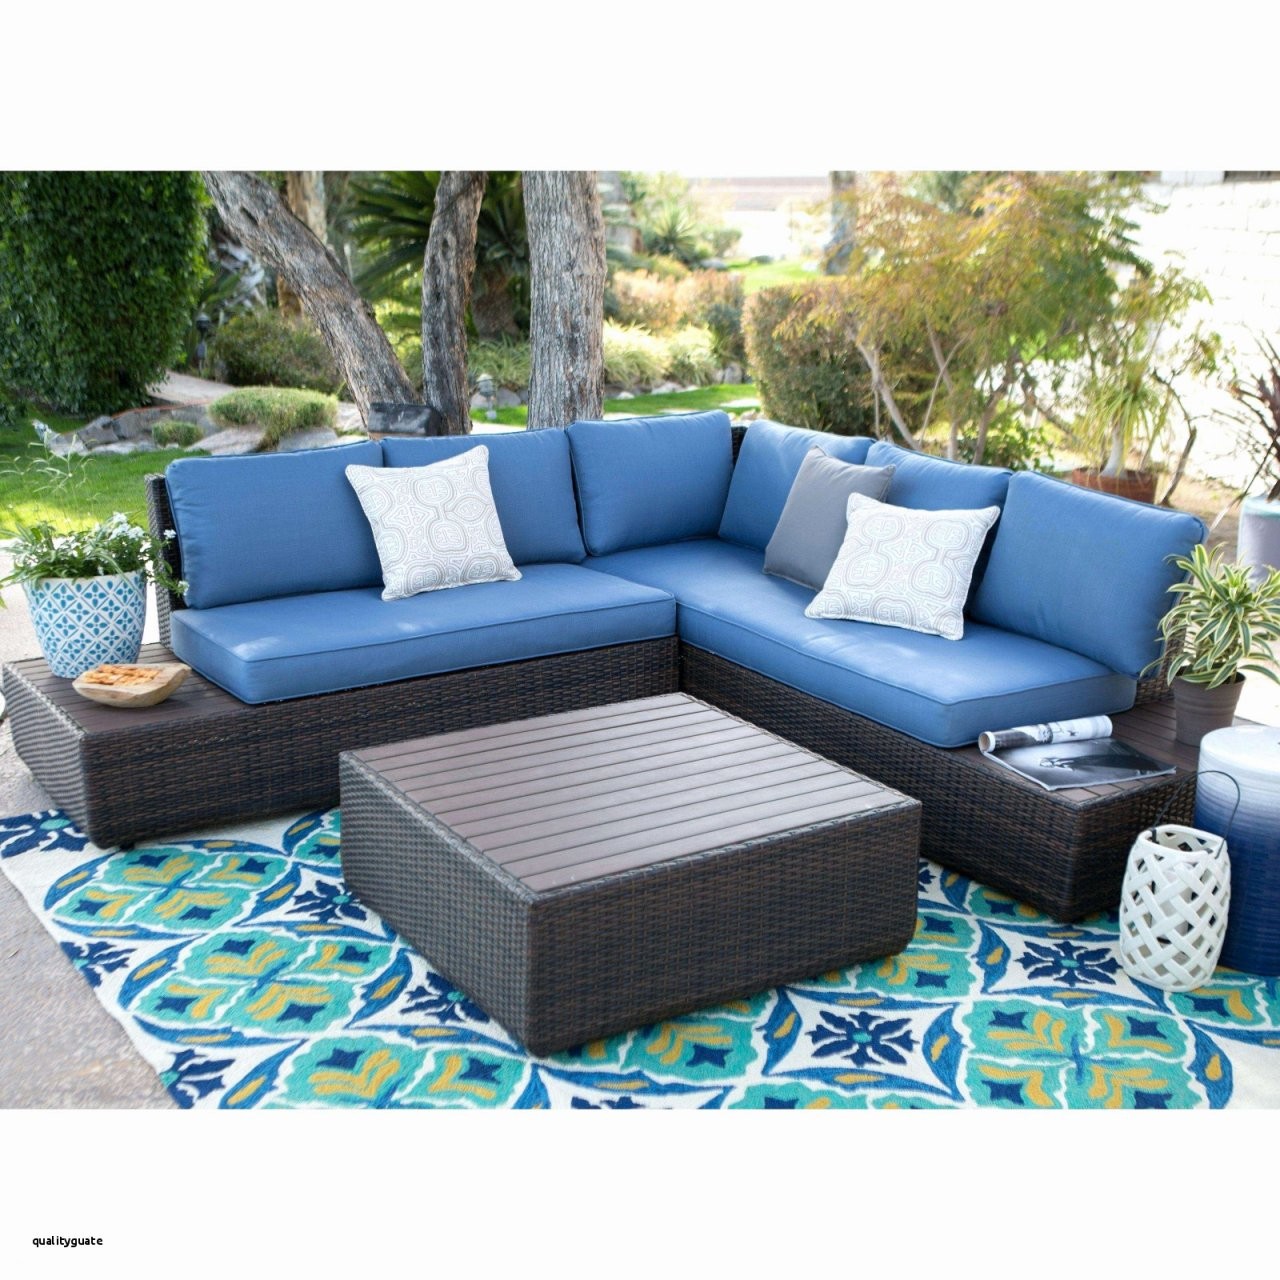 Sofatablett Acryl – Tufted Leather Sofa Modern von Rattan Couch Mit Schlaffunktion Bild